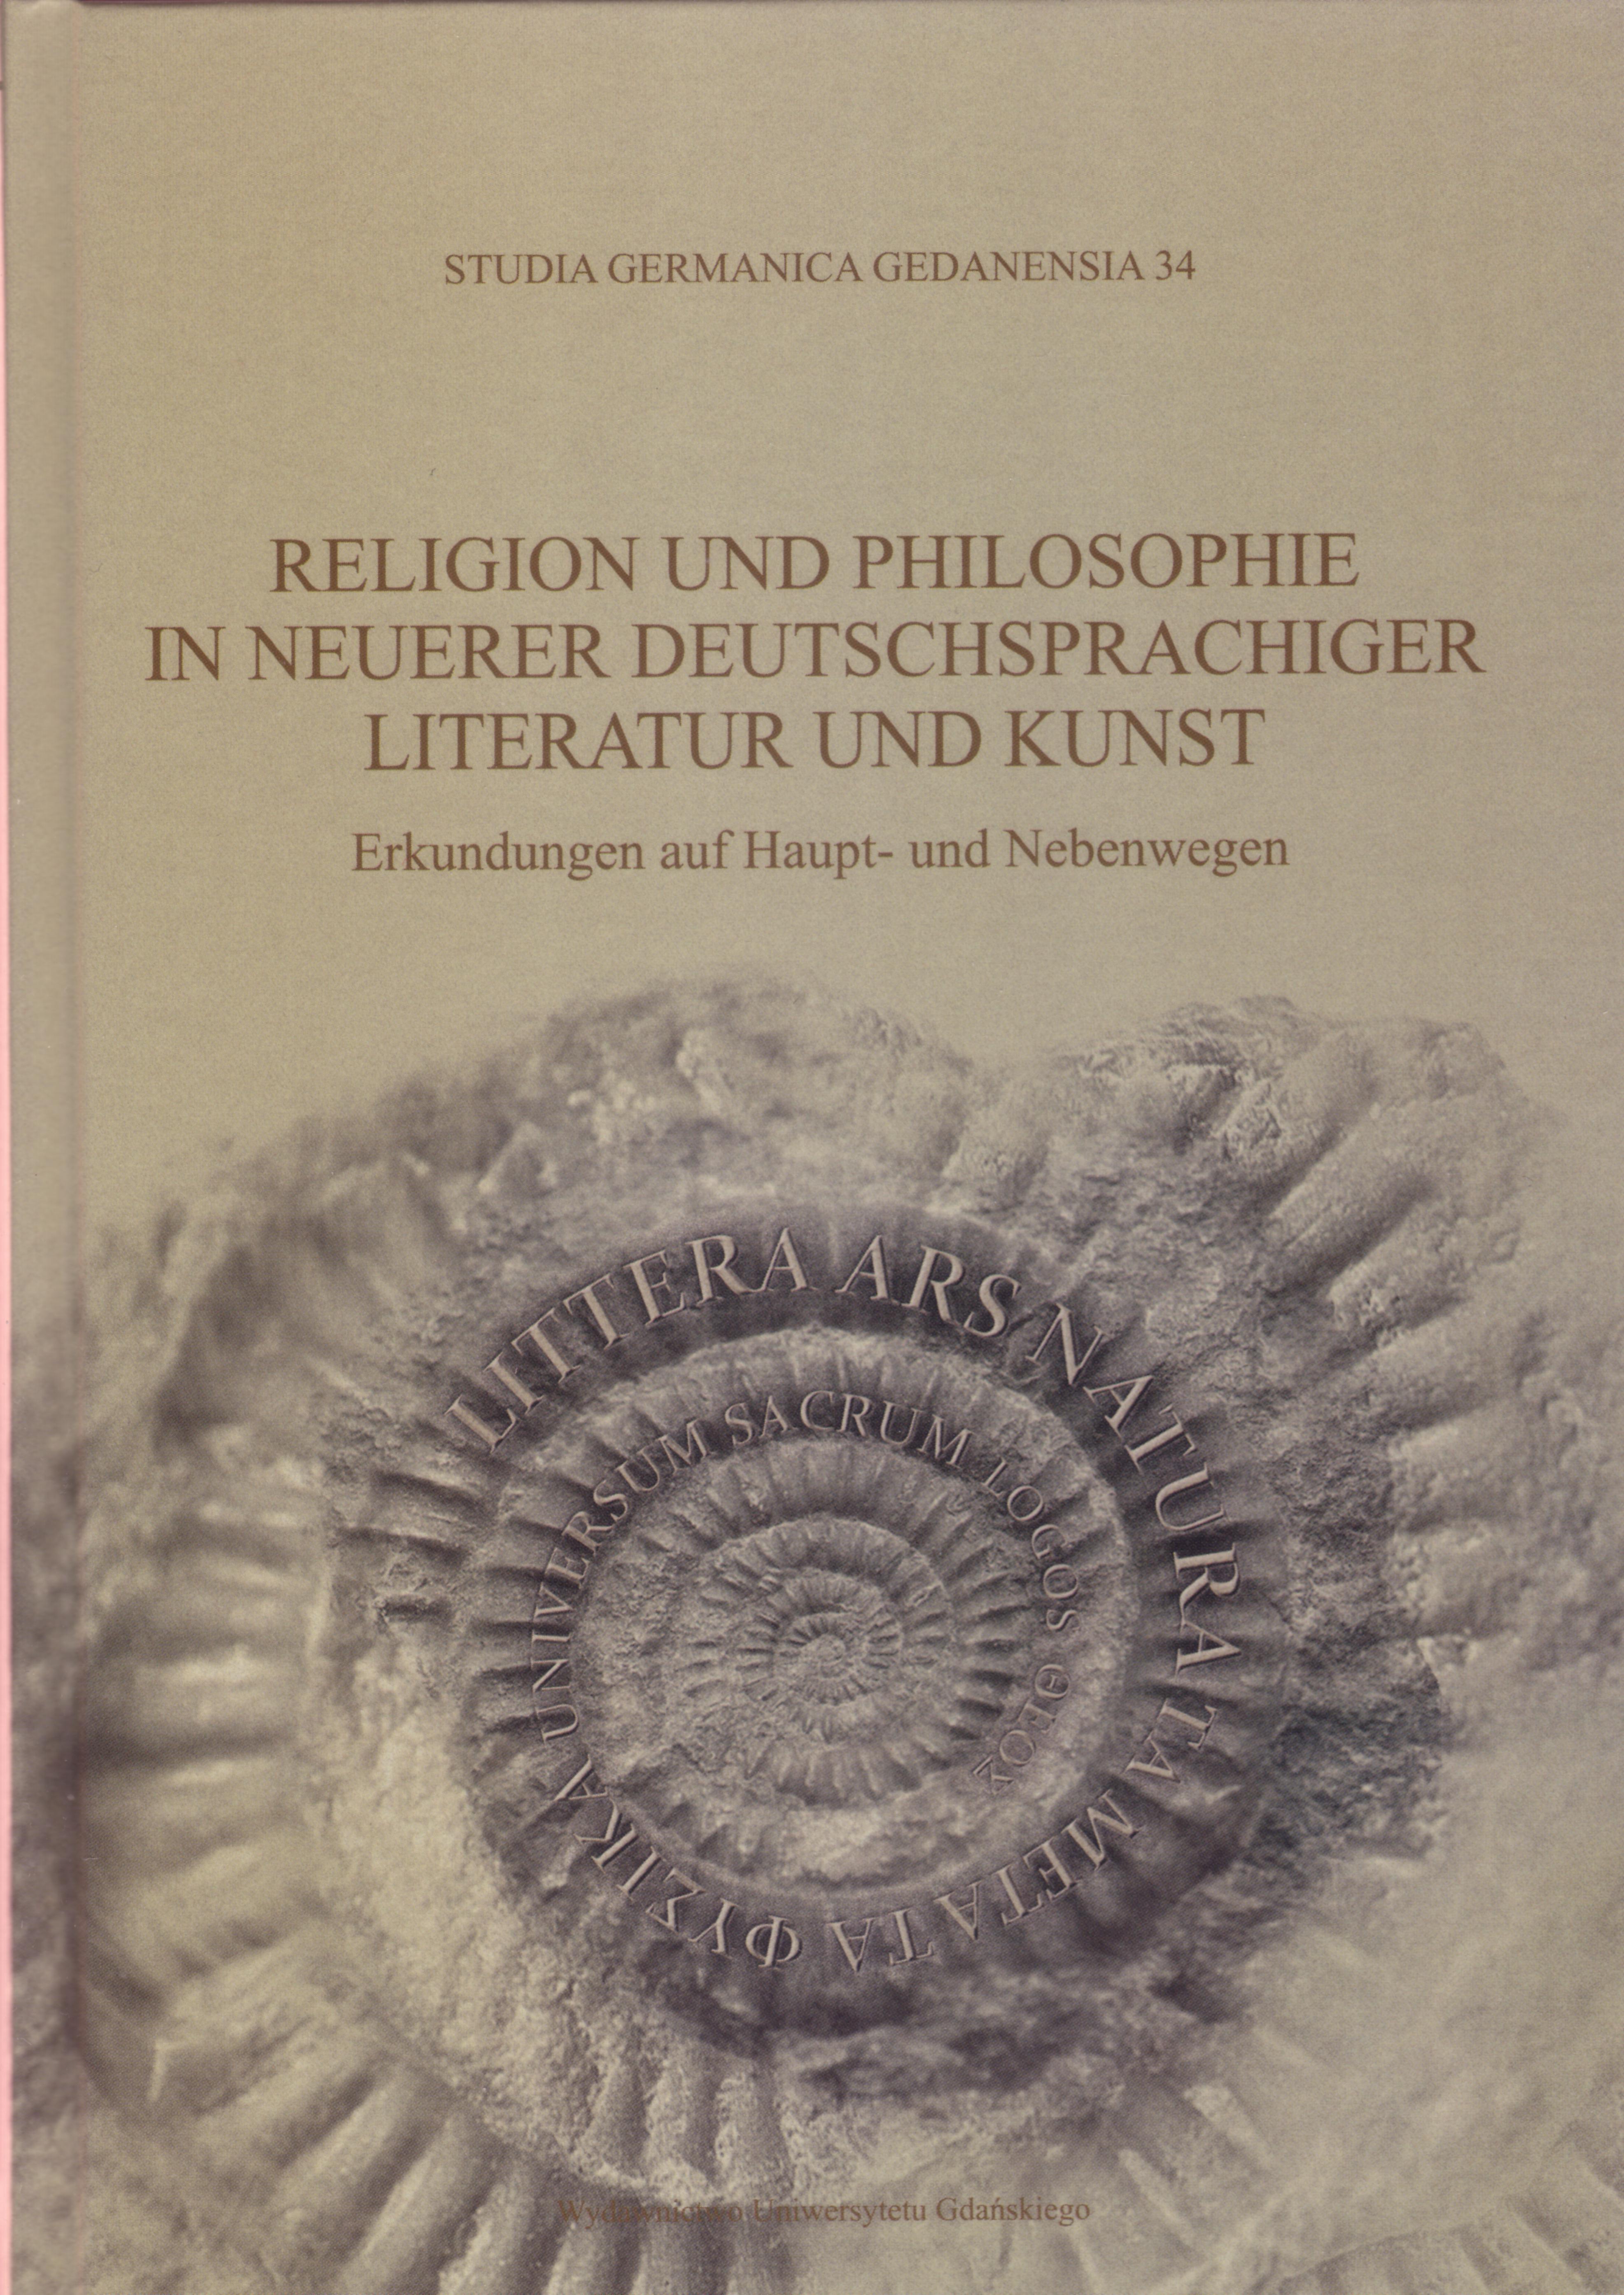 					Pokaż  Nr 34 (2016): Religion und Philosophie in neuerer deutschsprachiger Literatur und Kunst. Erkundungen auf Haupt- und Nebenwegen
				